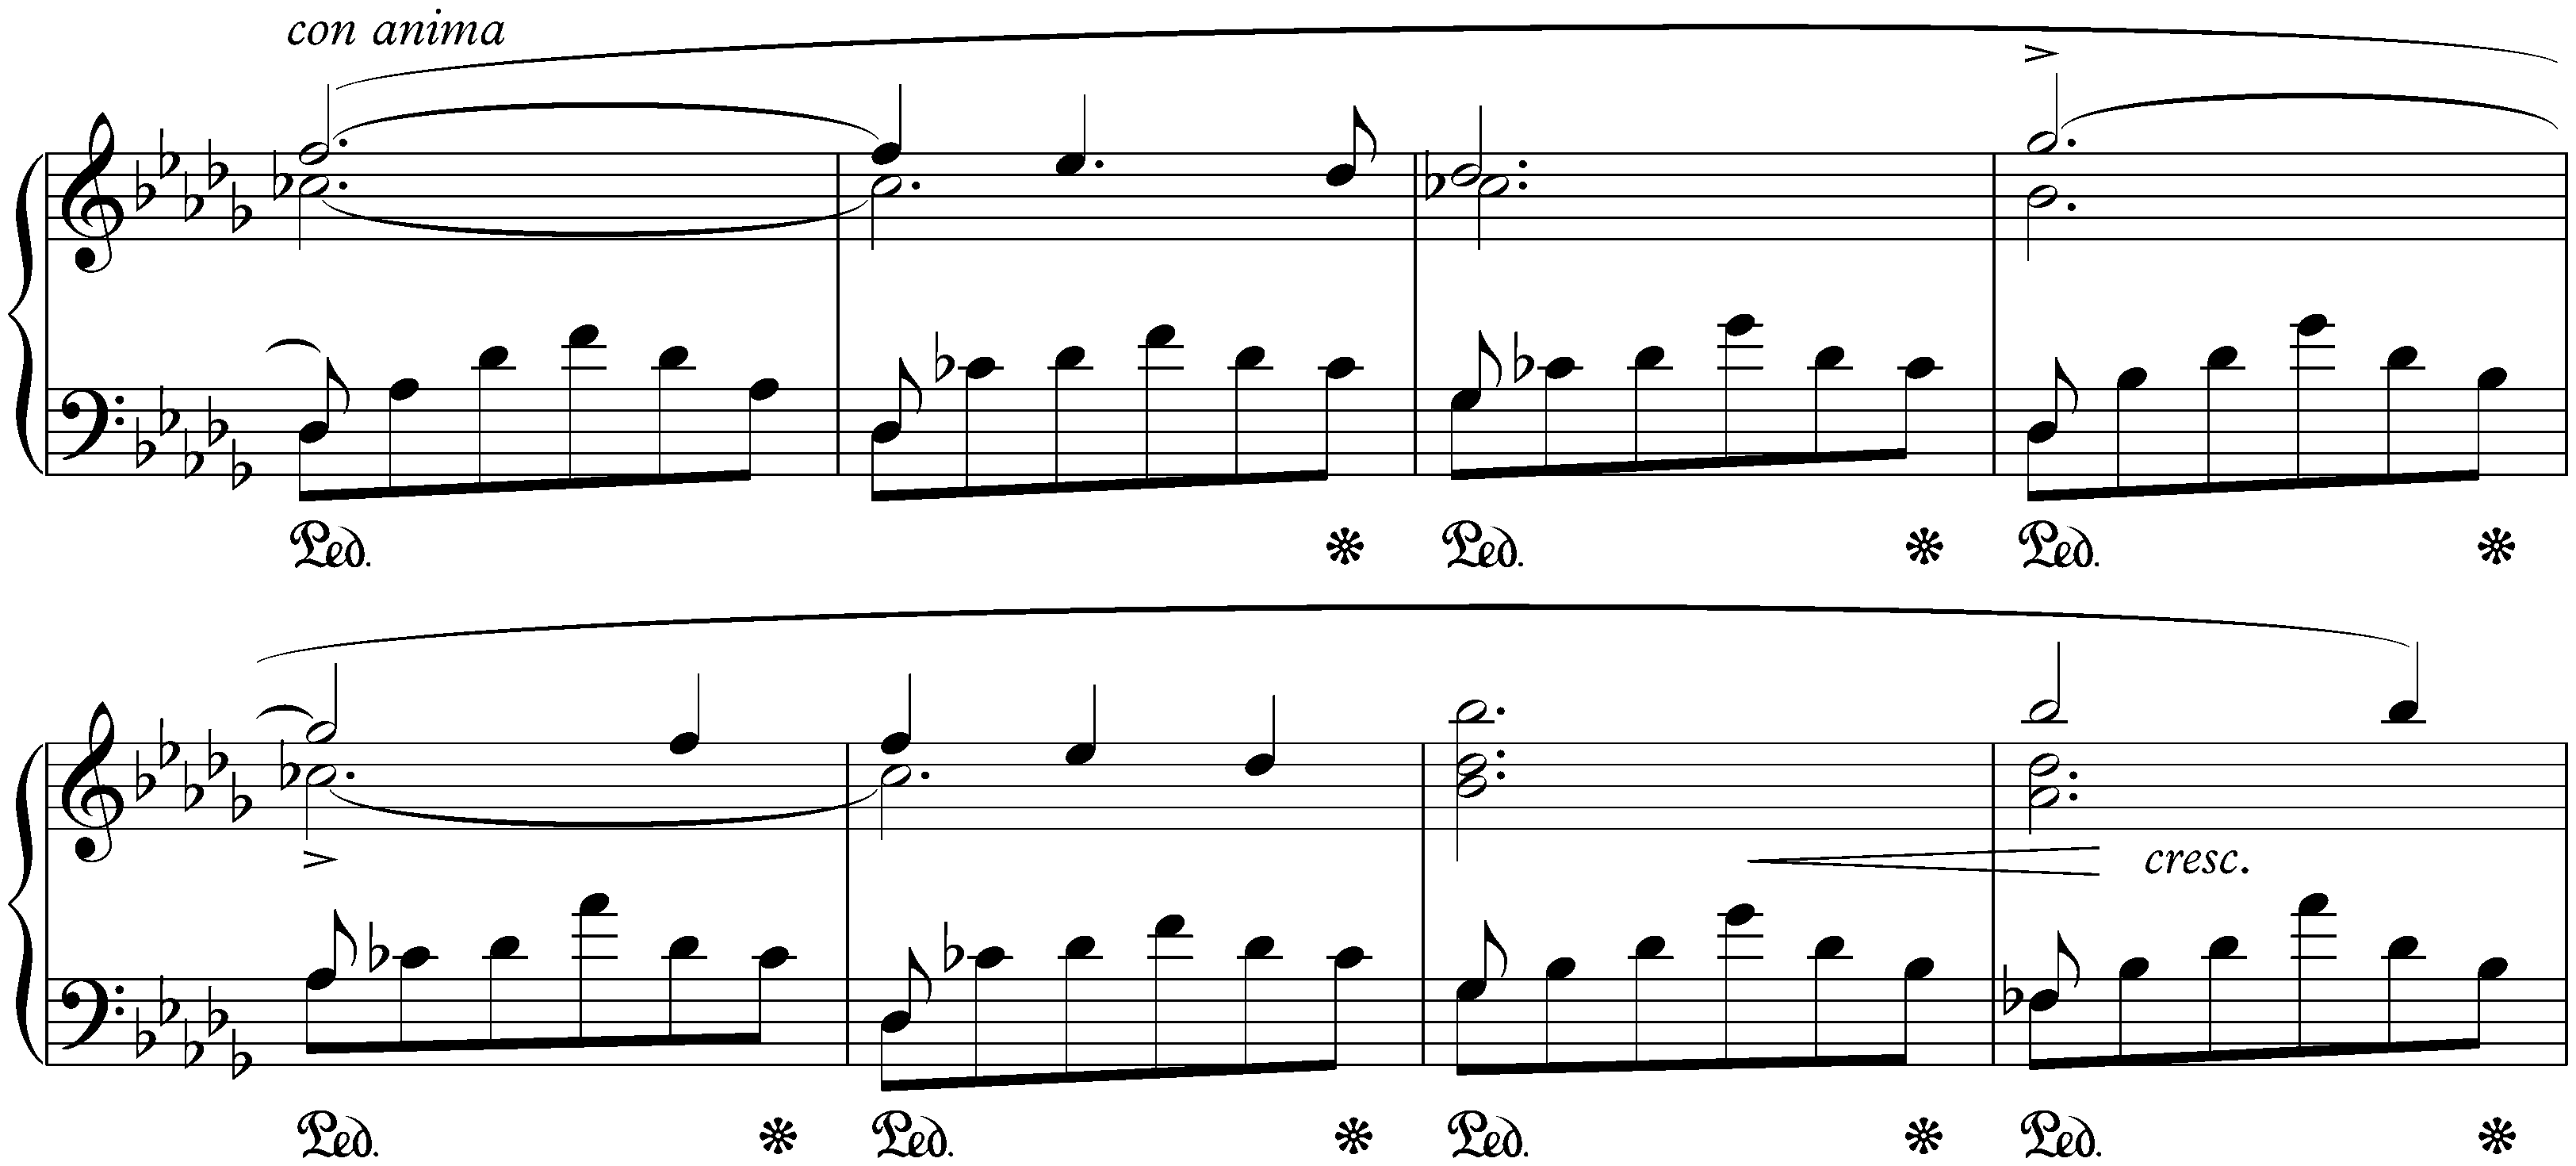 Scherzo no. 2 in B-flat minor, op. 31